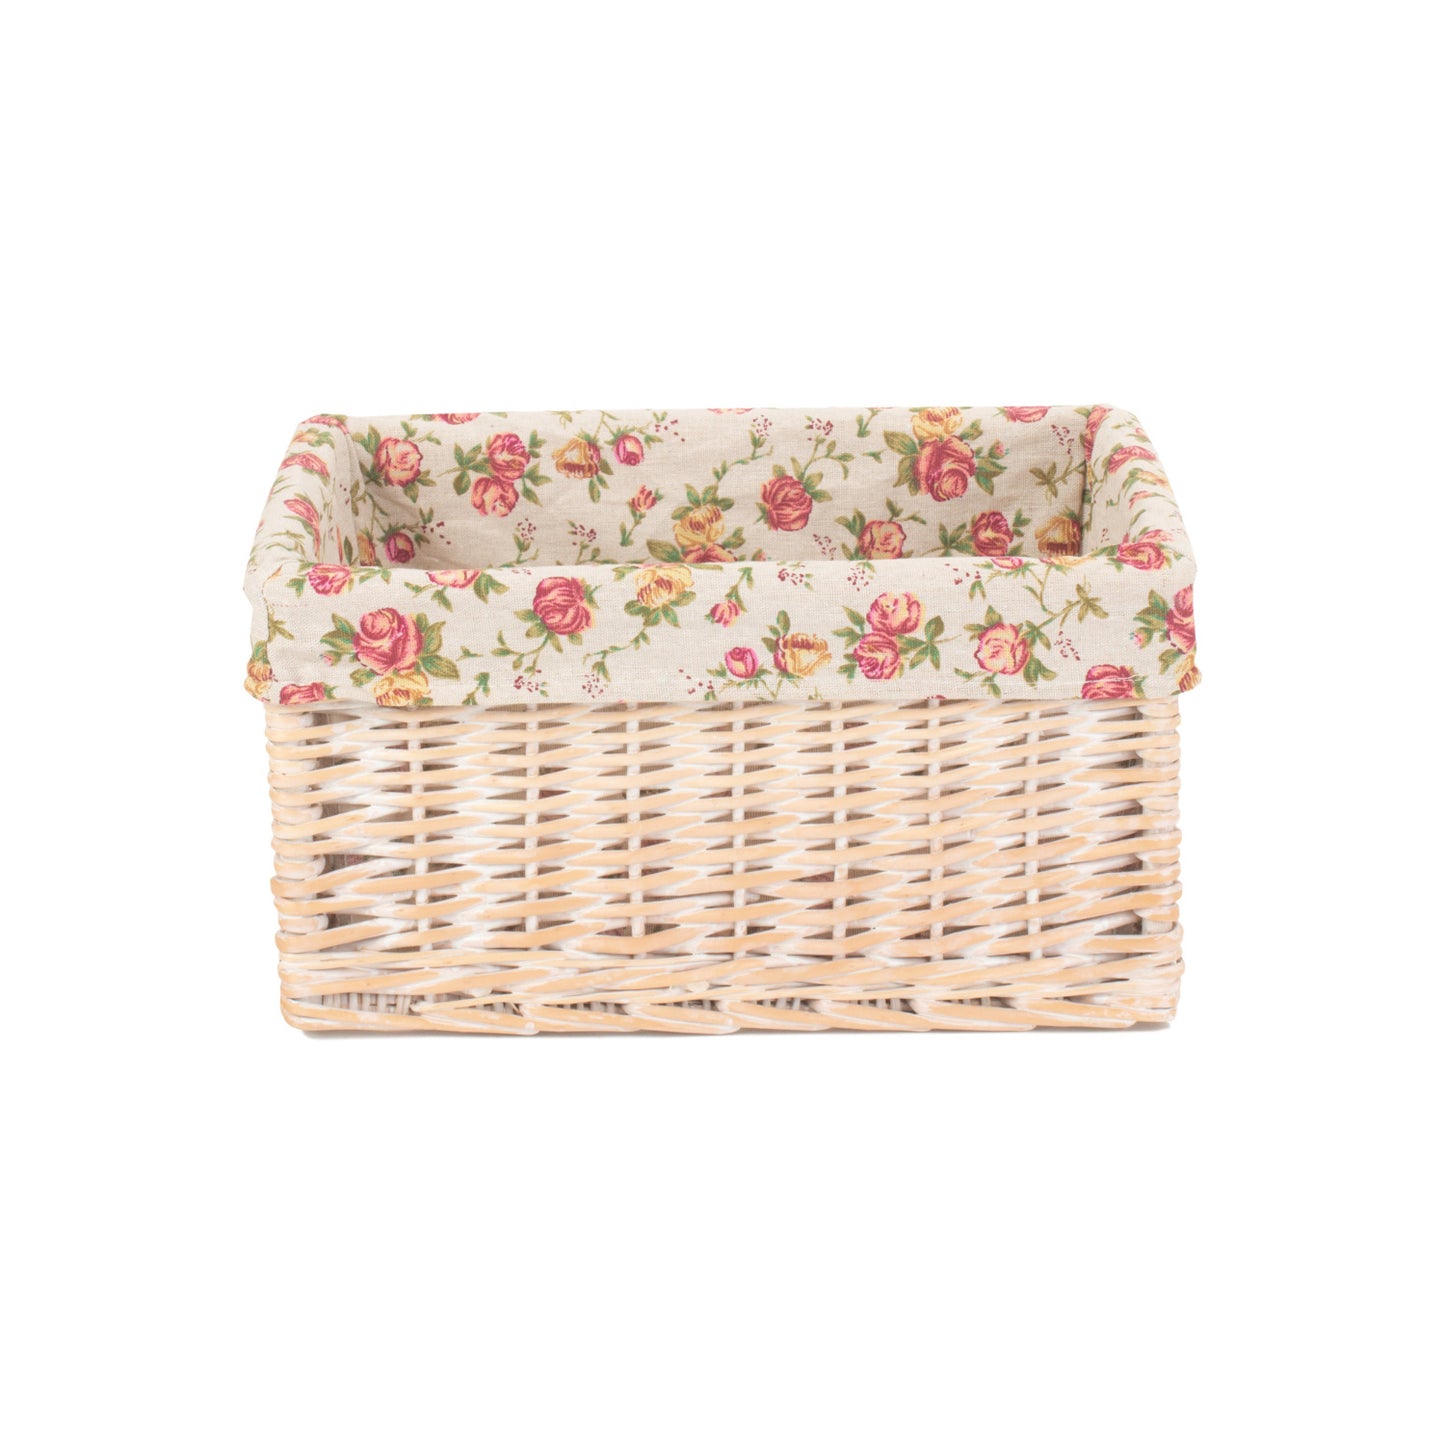 Medium White Wash Storage Basket With Garden Rose Lining